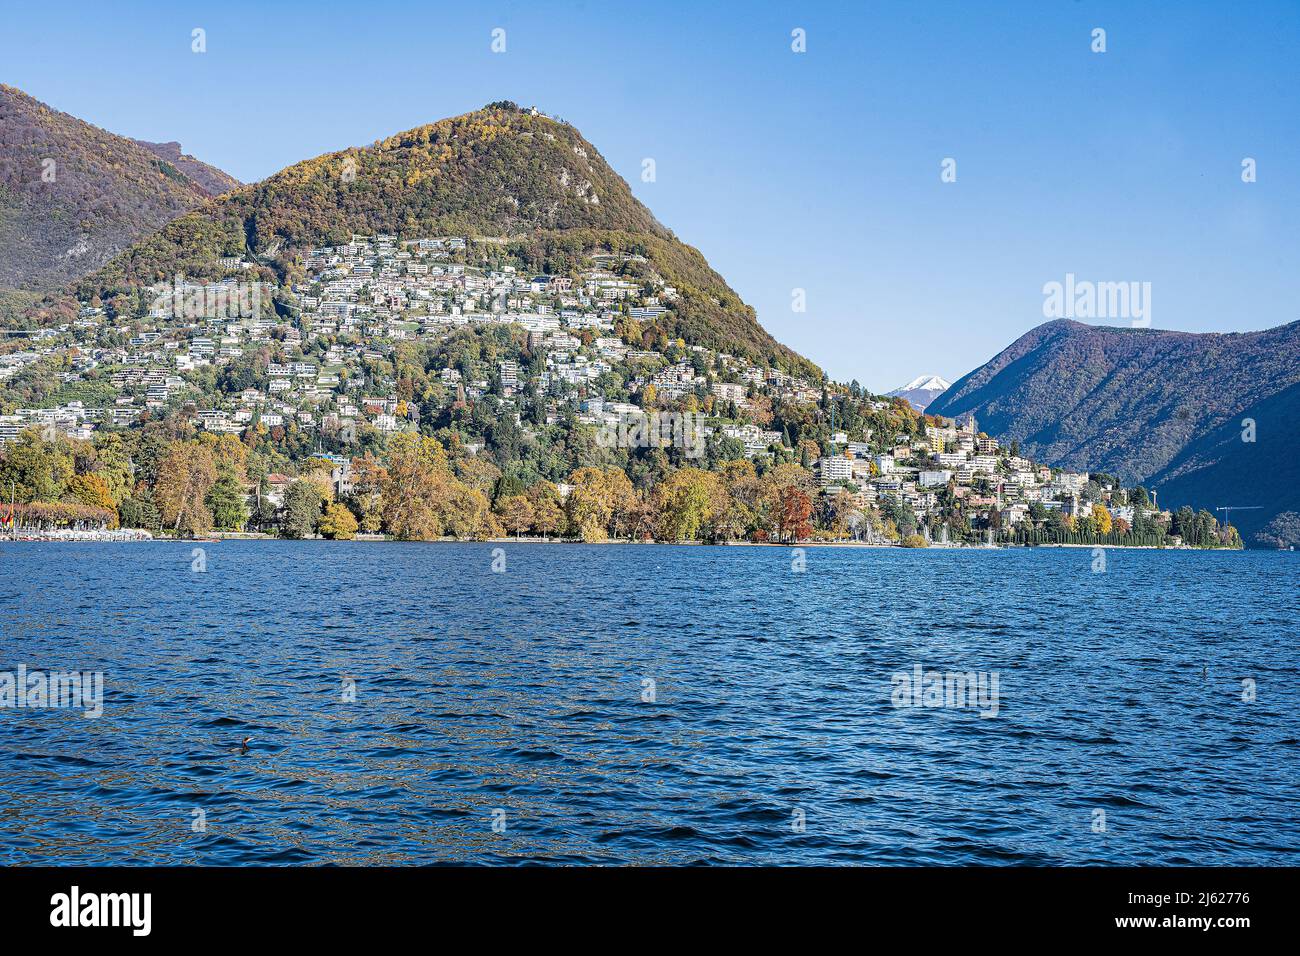 Monte Bre hill at Lago di Lugano, Canton Ticino, Switzerland Stock Photo